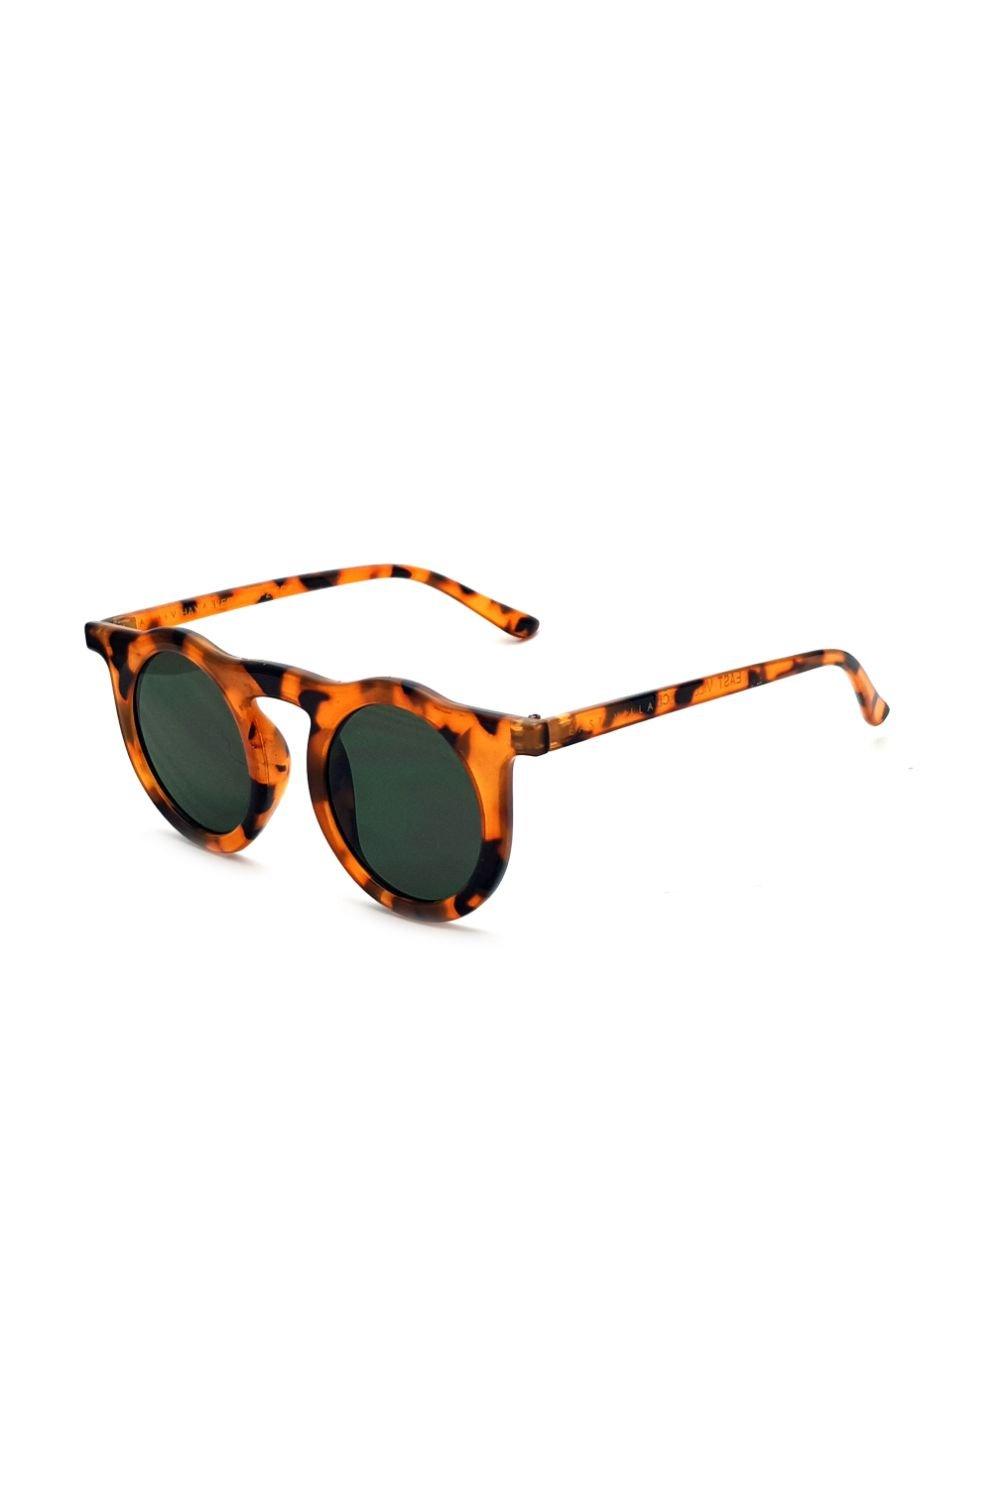 круглые солнцезащитные очки journeyman east village серебро Круглые солнцезащитные очки Haymaker East Village, коричневый